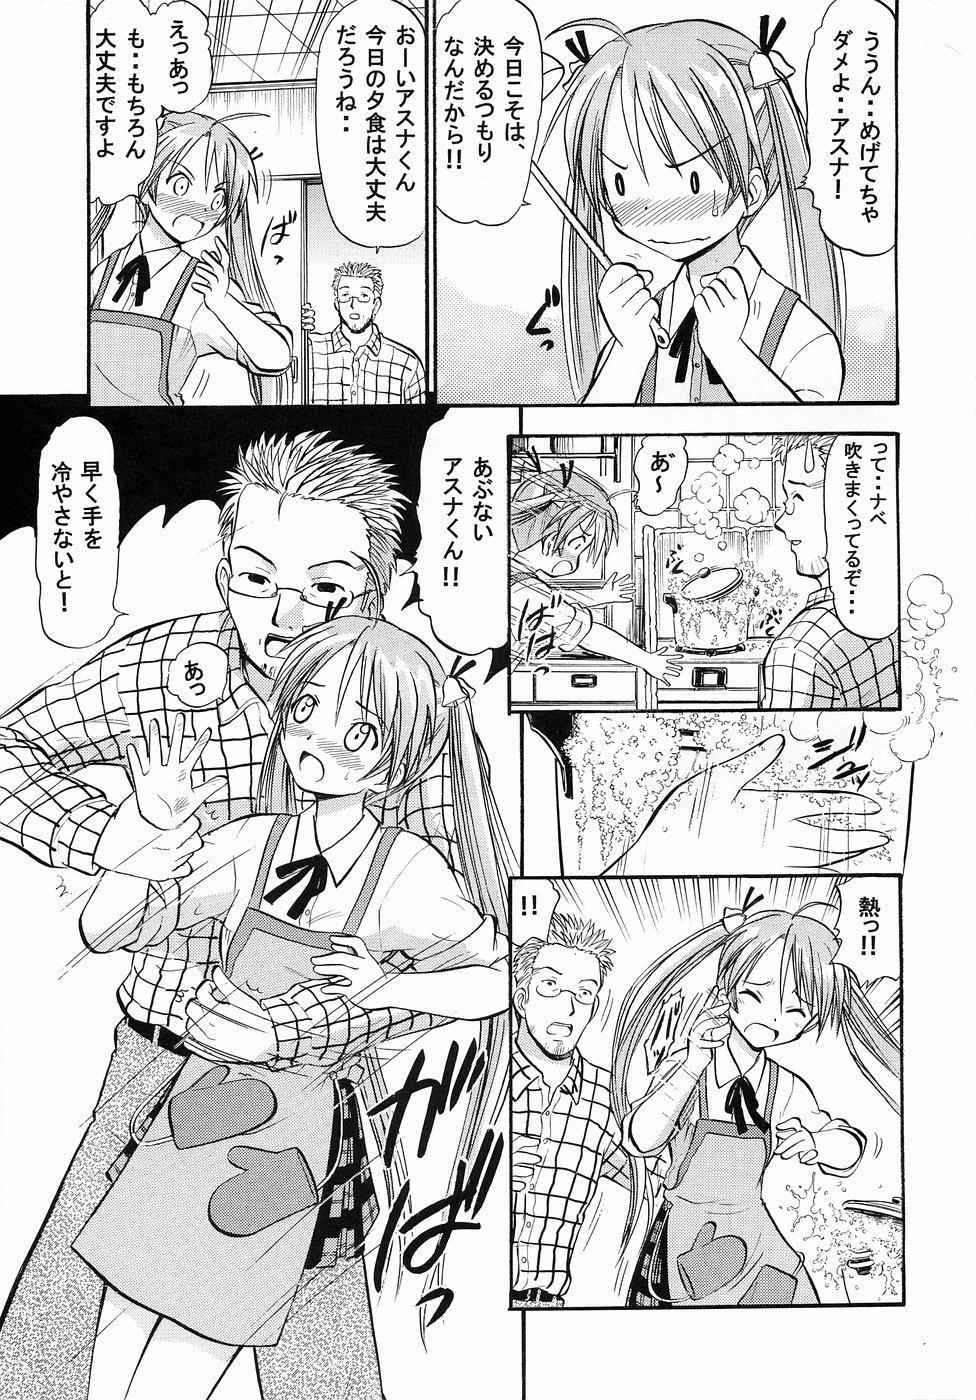 Gros Seins Asuna no Koi Suru Heart - Mahou sensei negima Urine - Page 4